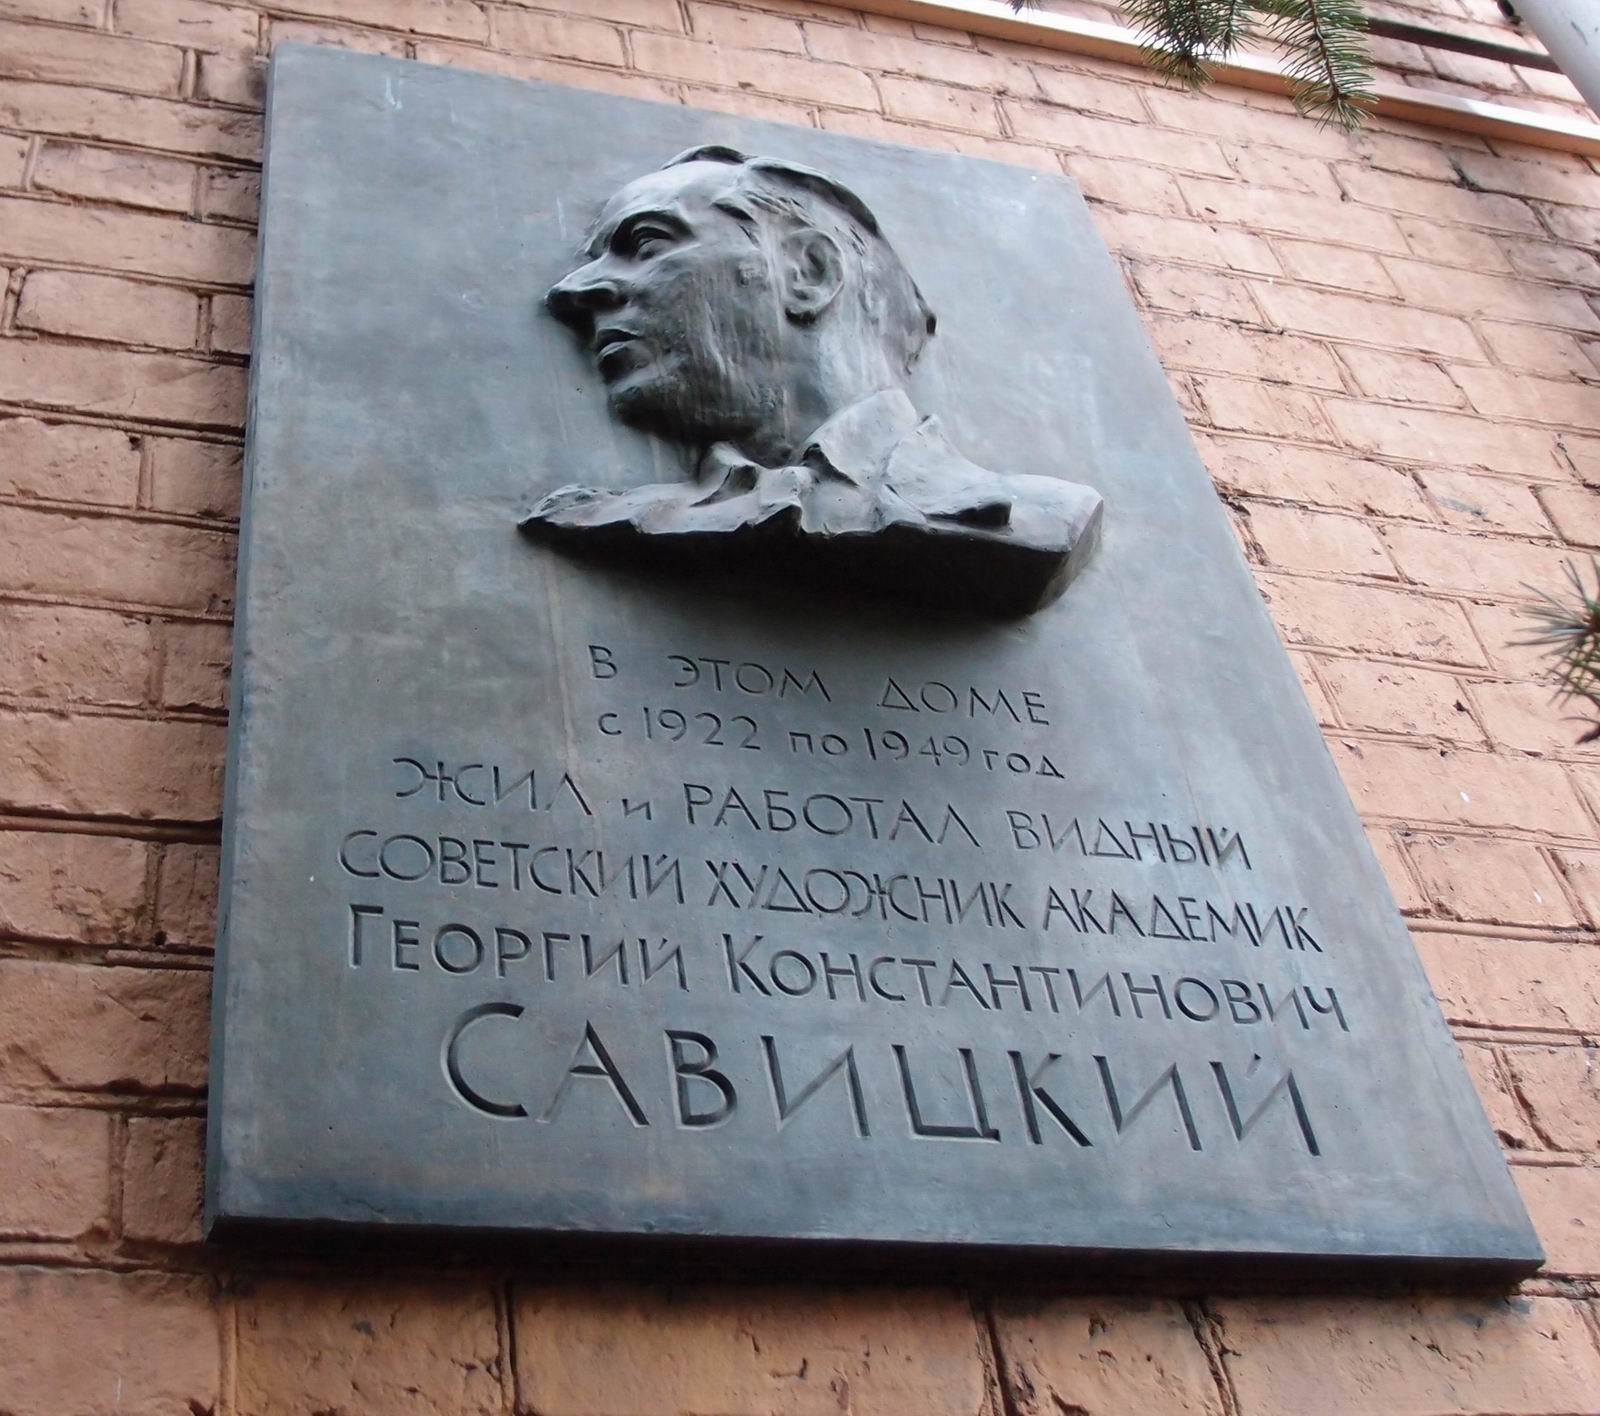 Мемориальная доска Савицкому Г.К. (1887–1949), ск. И.Ш.Рабинович, в Лаврушинском переулке, дом 3/8, открыта в 1962.